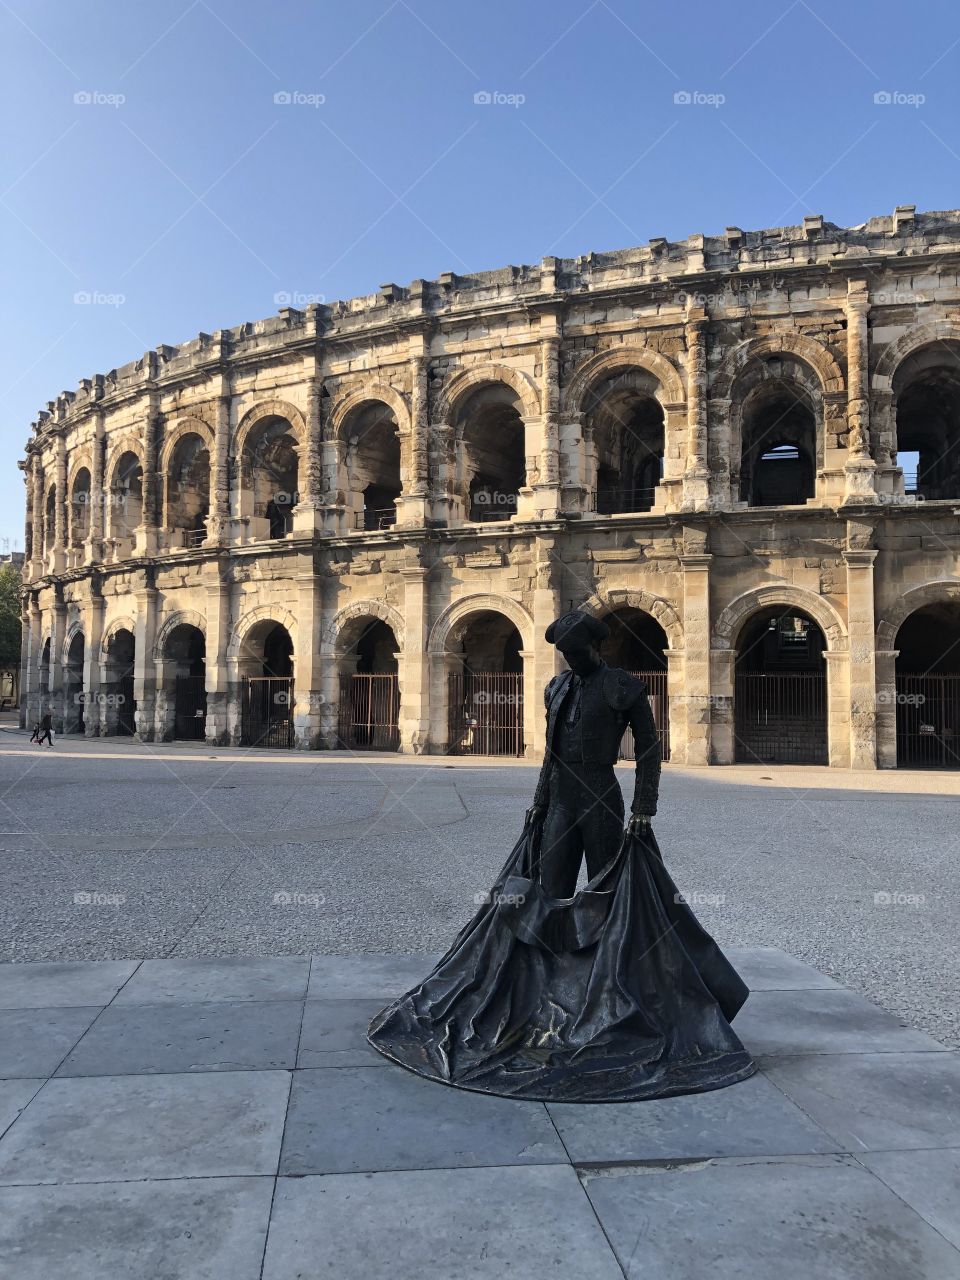 Sculpture behind arena